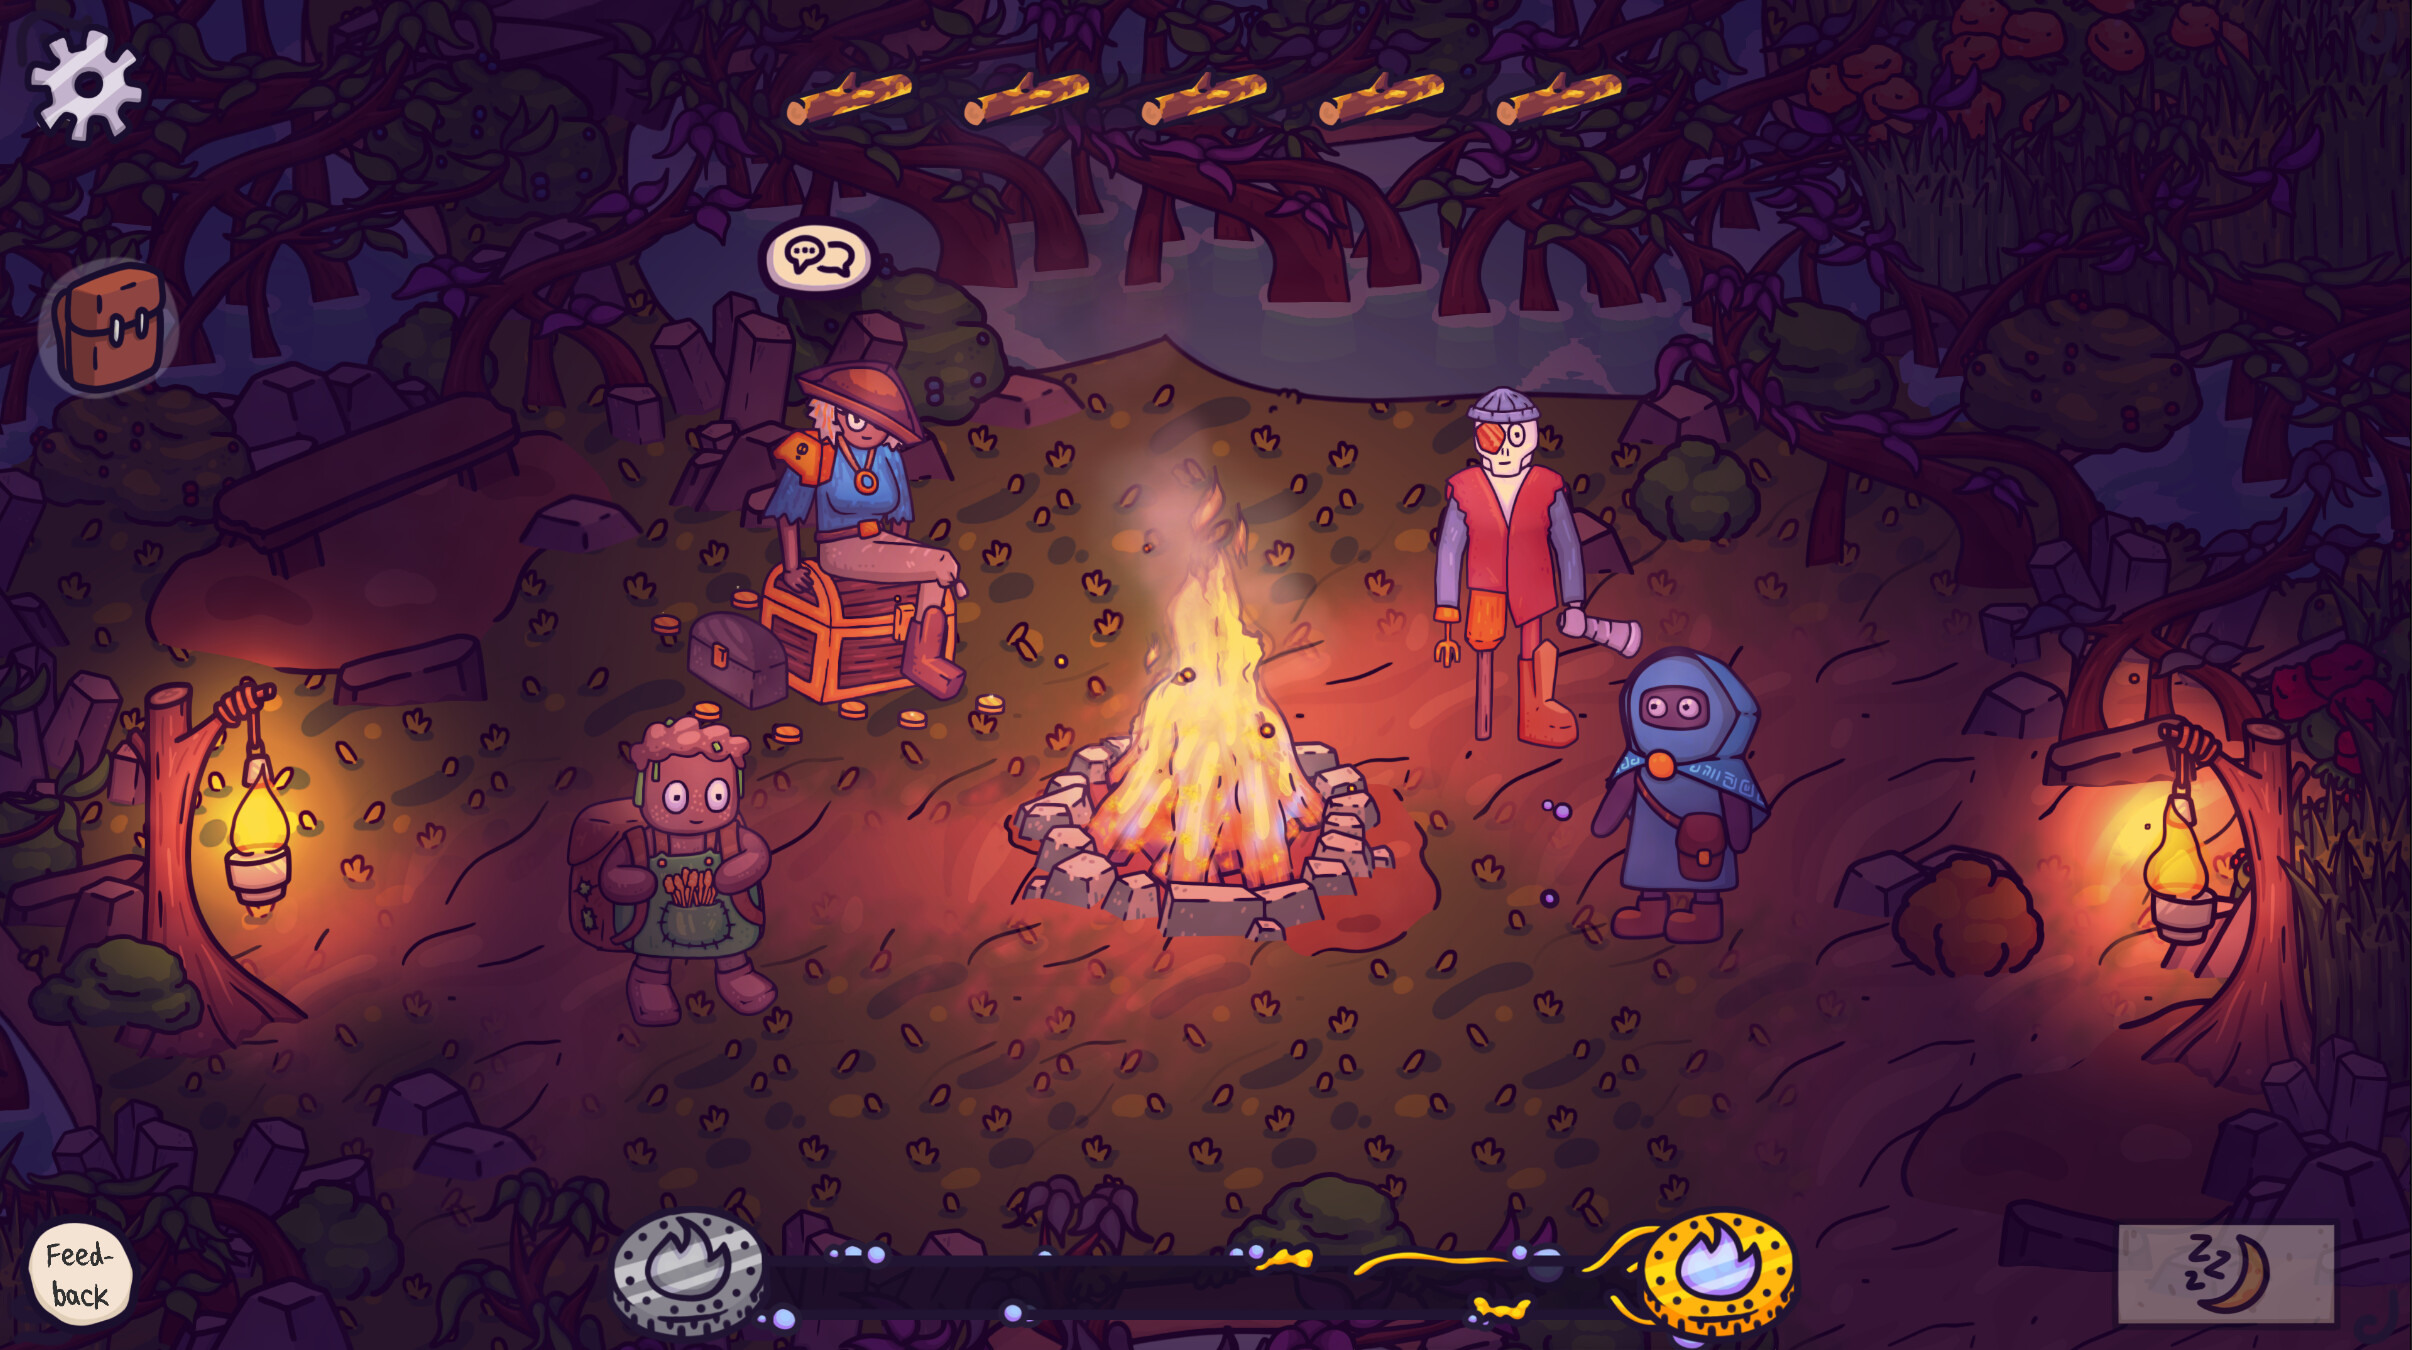 《营火之旅 Fireside》宣布 6 月 5 日发售 探索充满魔法的宁静世界